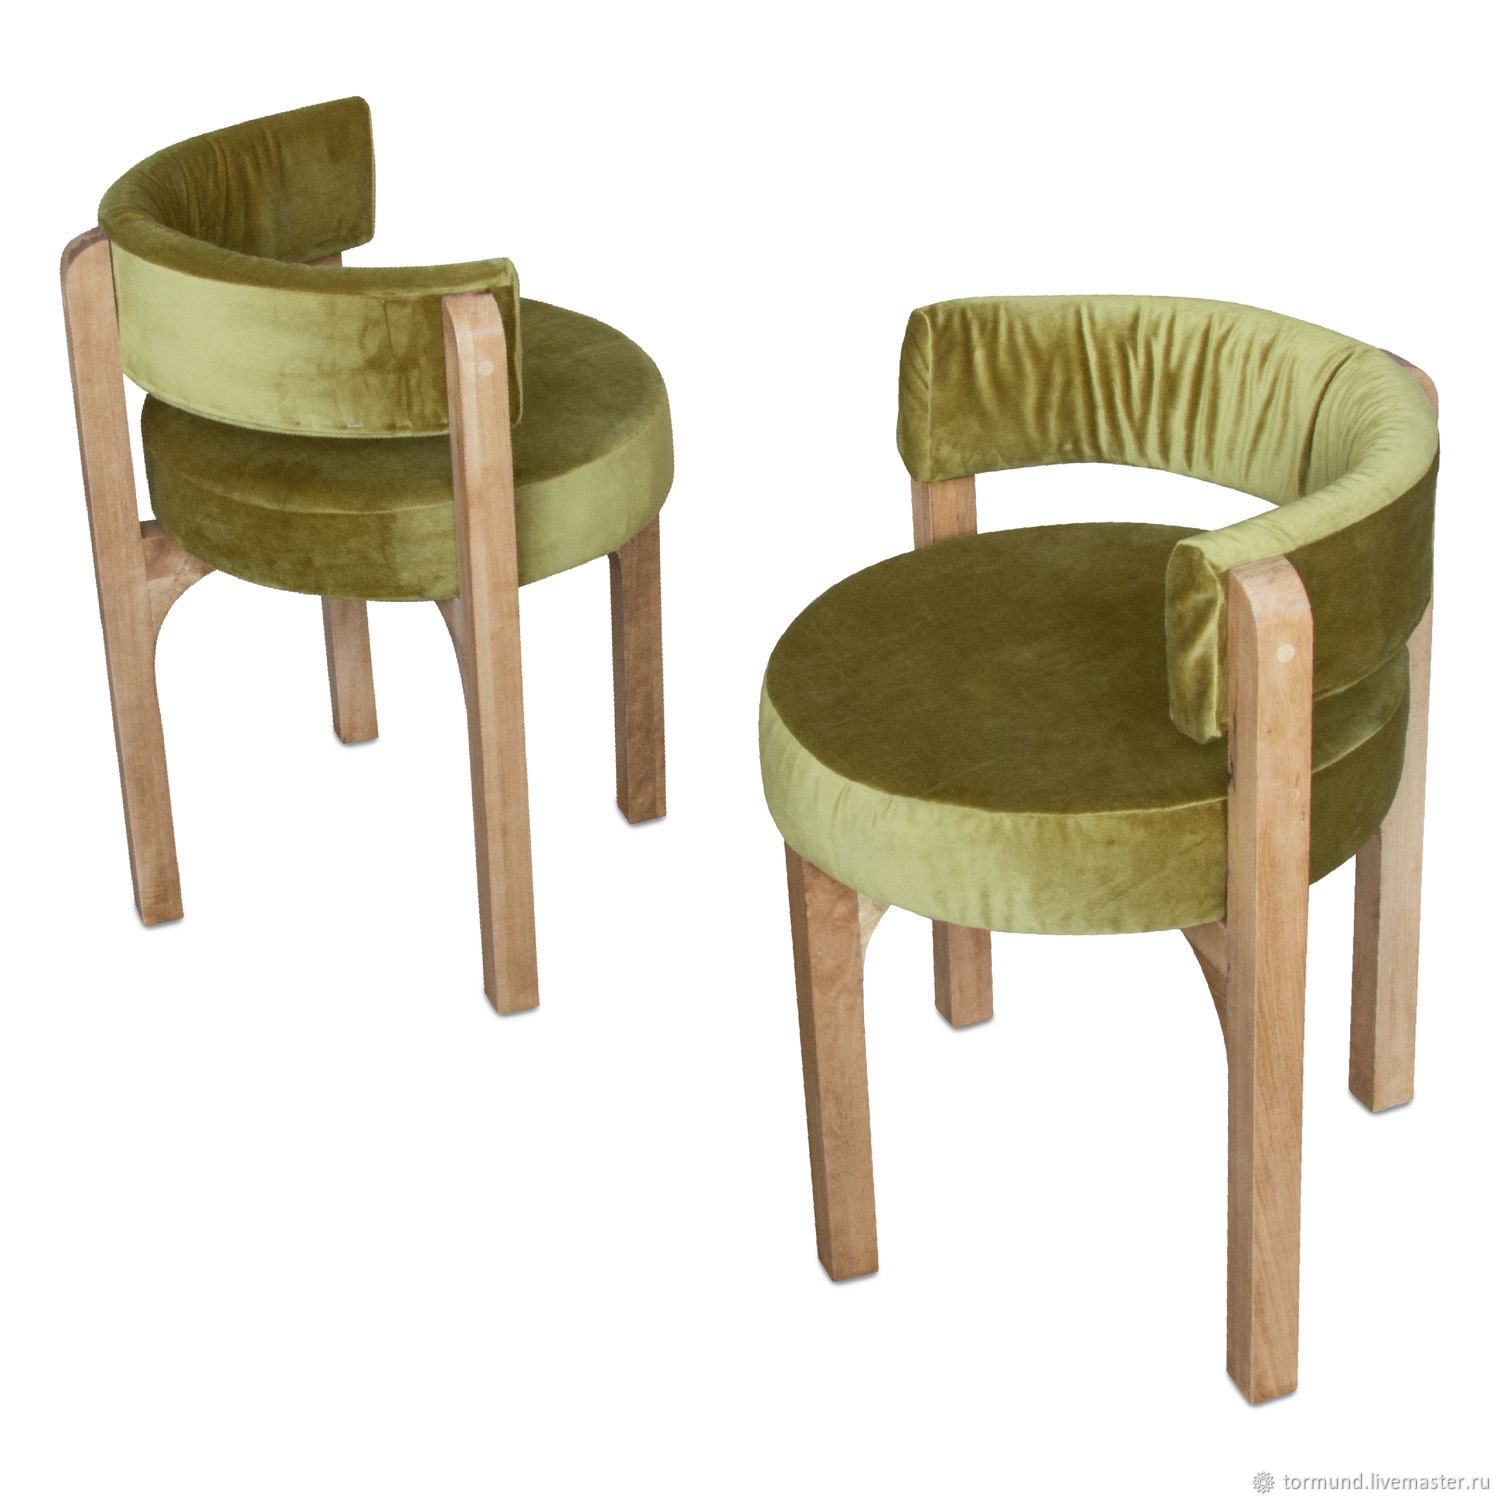 Деревянные стулья — Низкая цена на все модели — Наши стулья